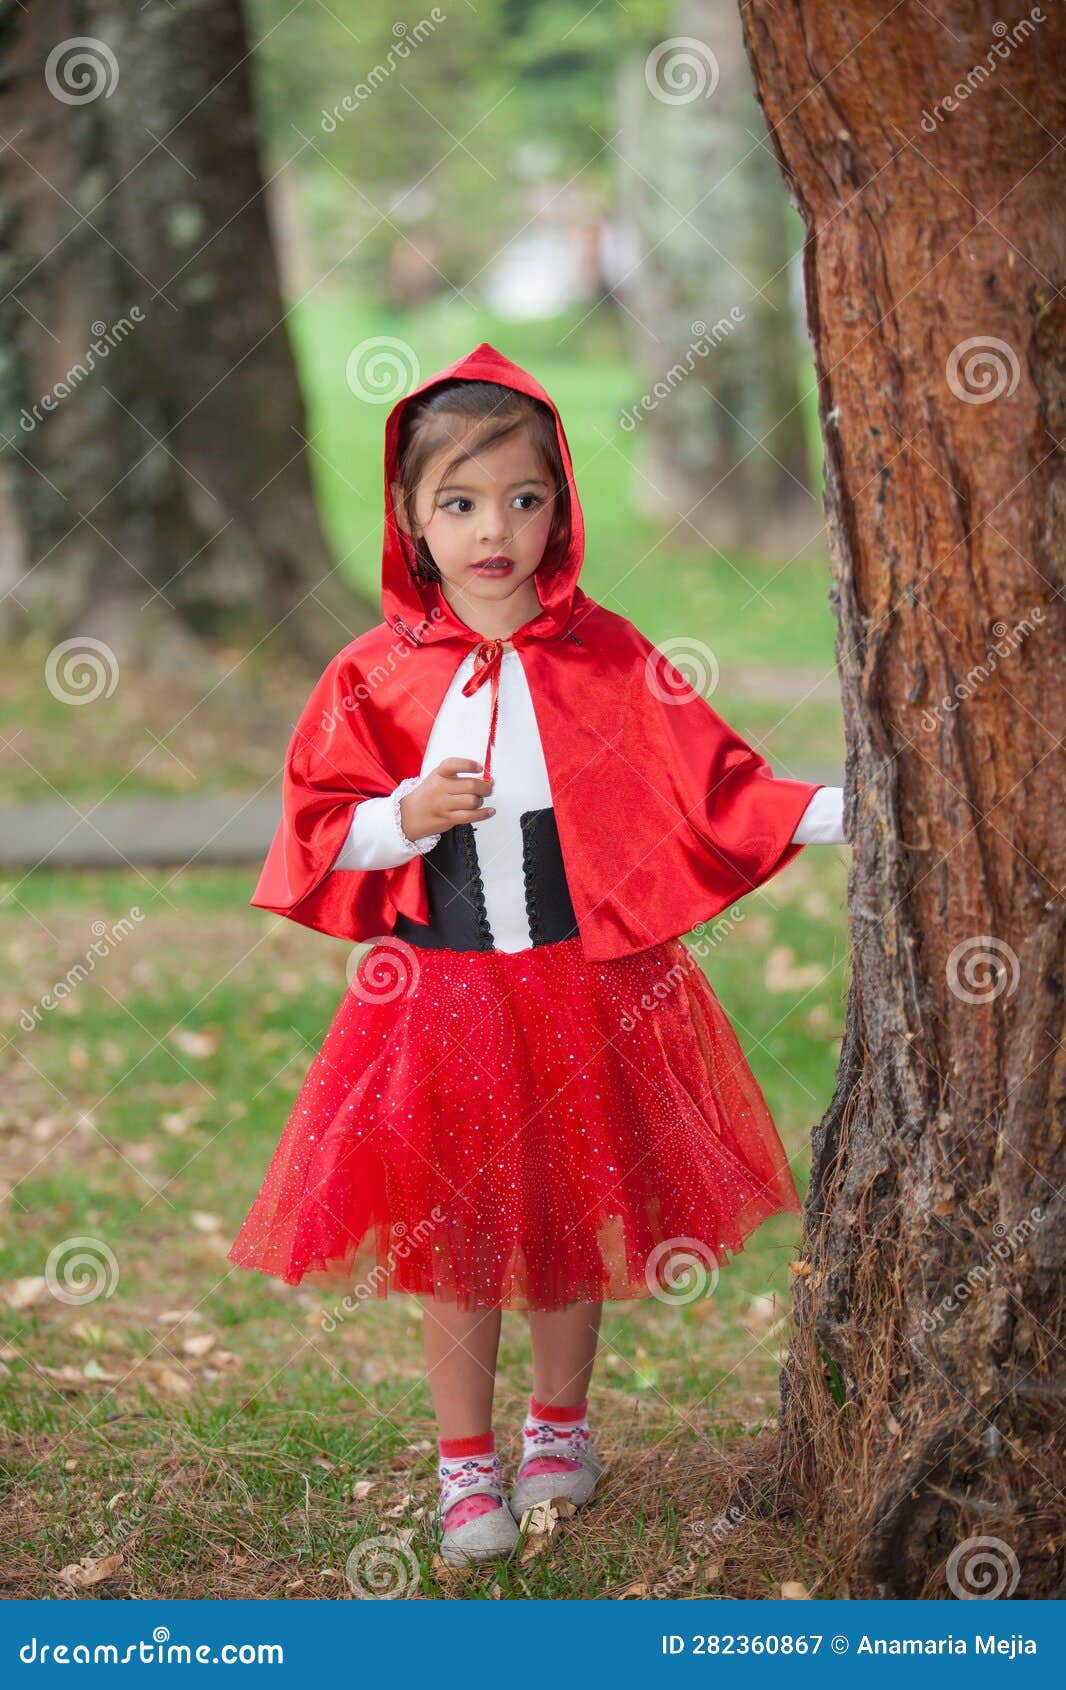 https://thumbs.dreamstime.com/z/douce-fille-portant-un-petit-costume-de-cagoule-rouge-une-vraie-famille-s-amuser-en-utilisant-des-costumes-la-petite-hotte-les-du-282360867.jpg